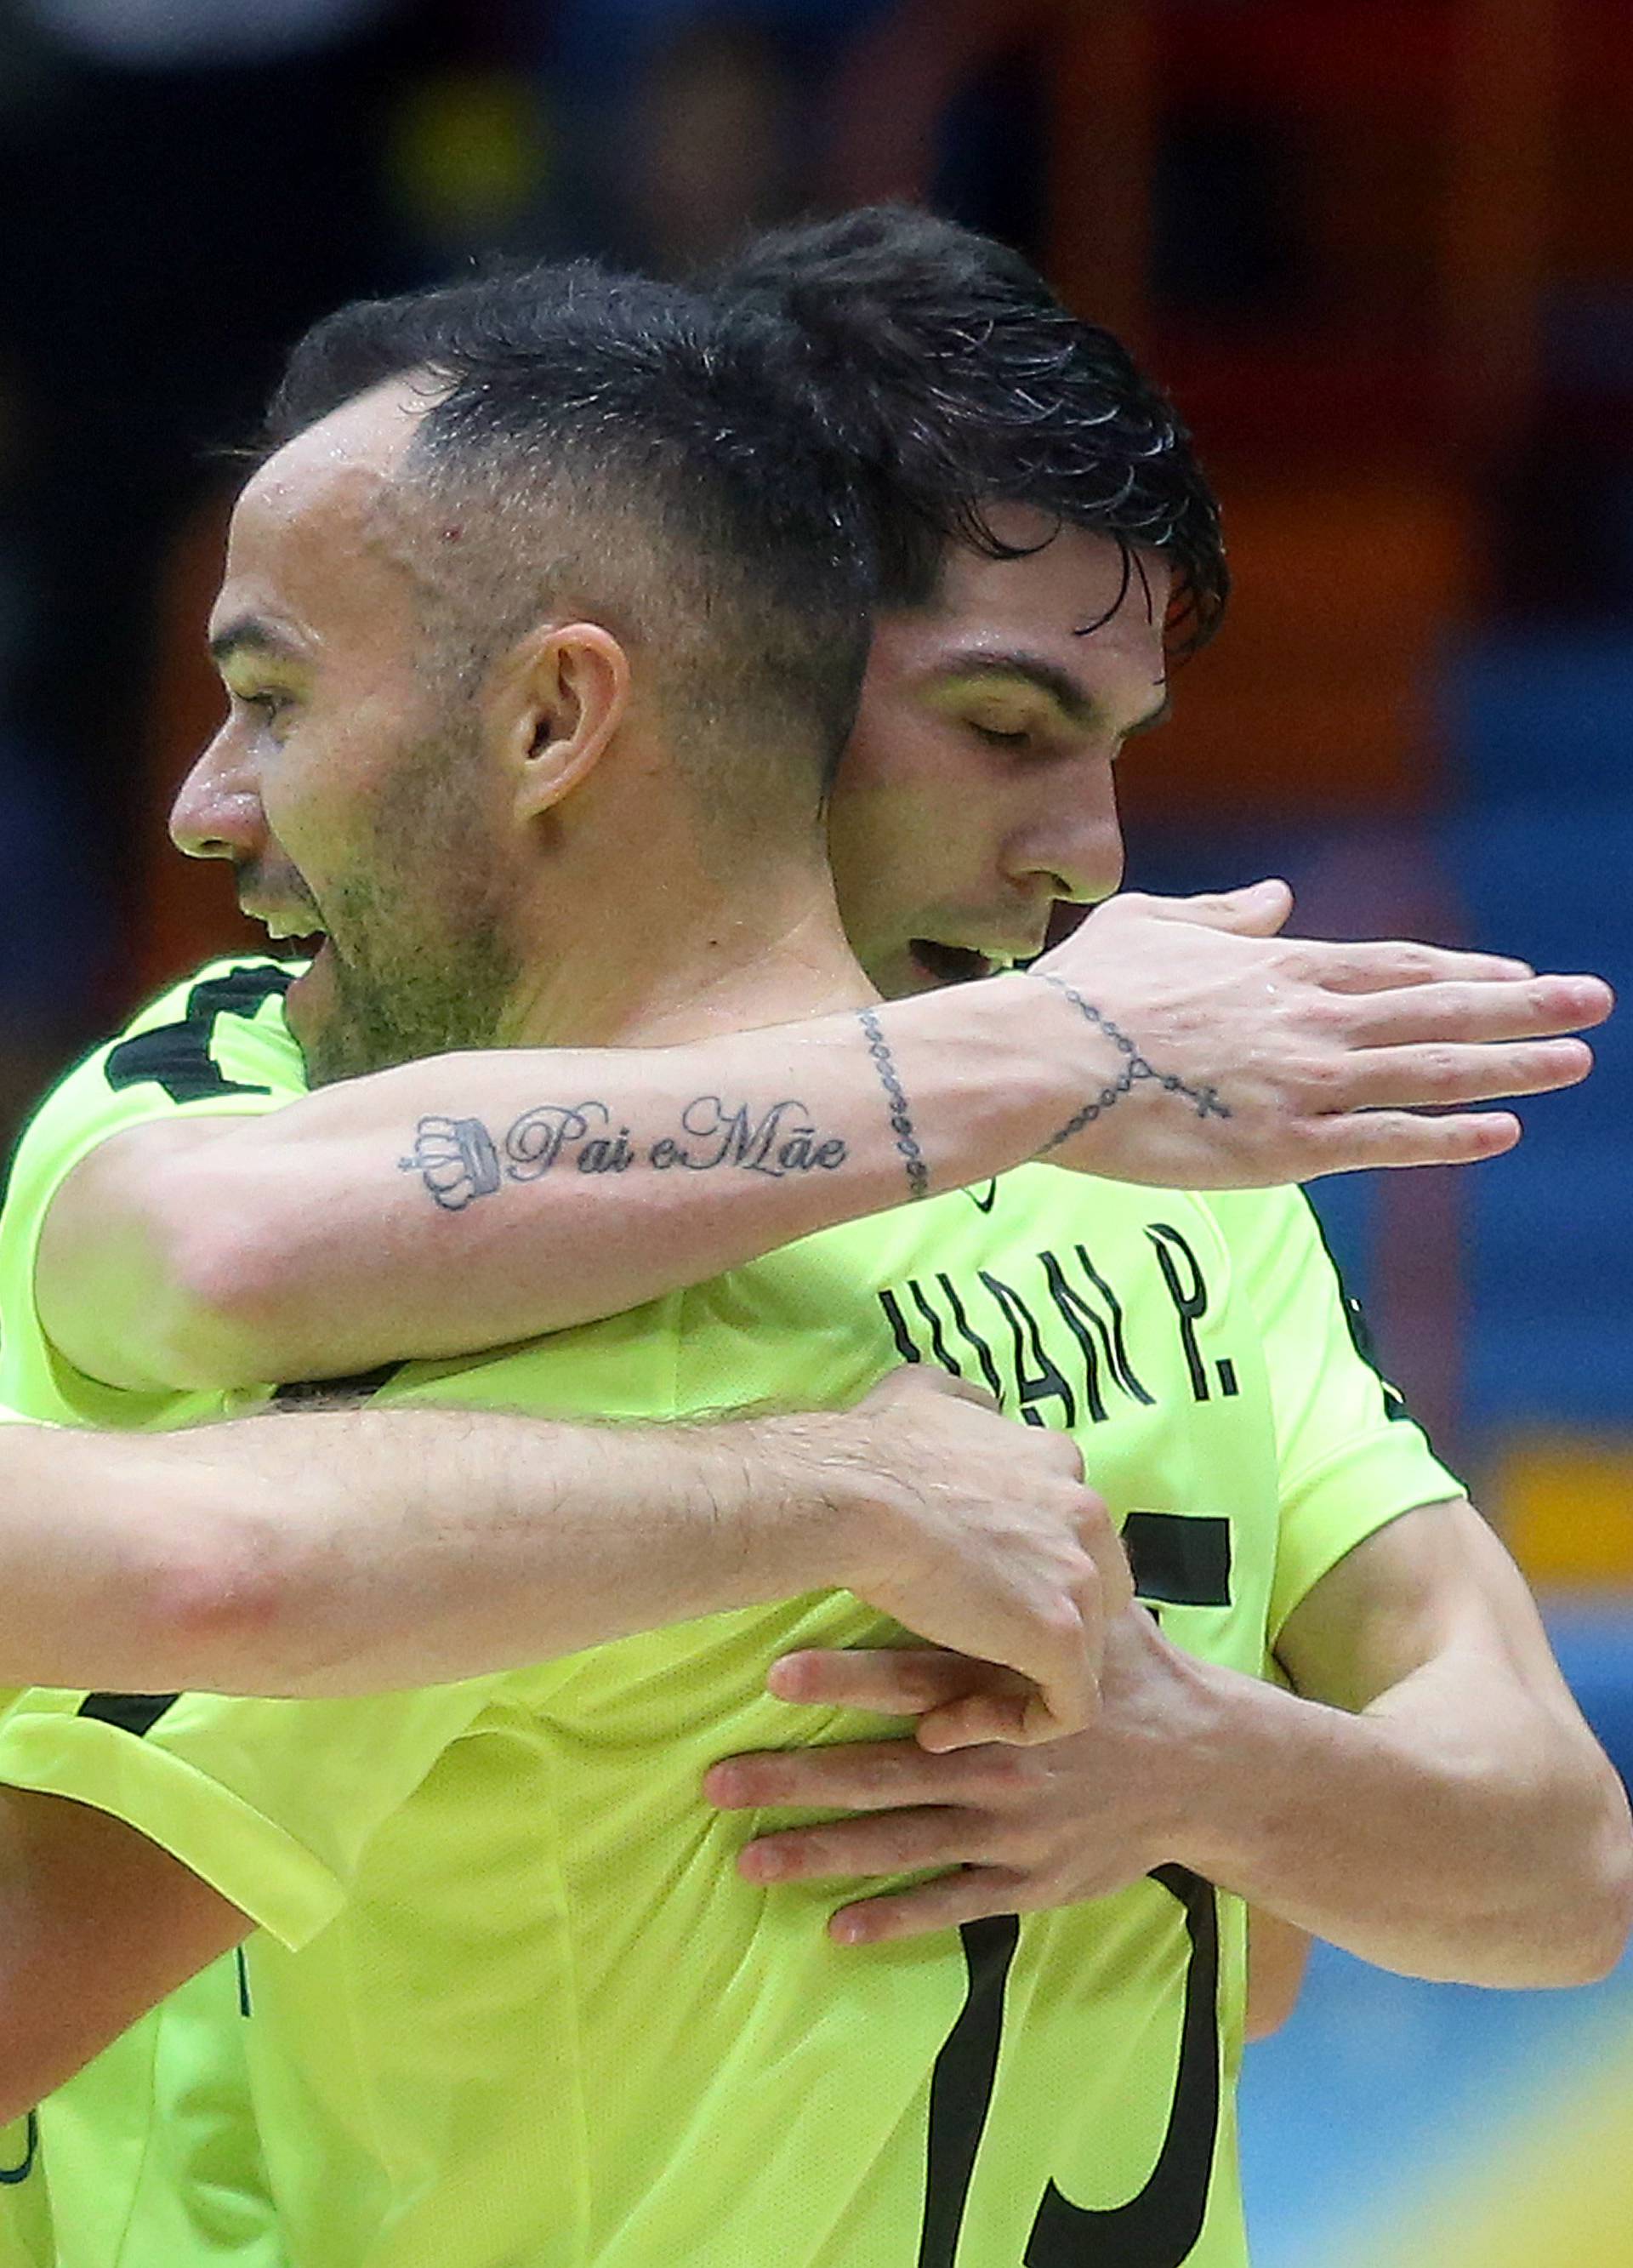 Senzacija! Nacional je svladao ruskog doprvaka u Futsal kupu